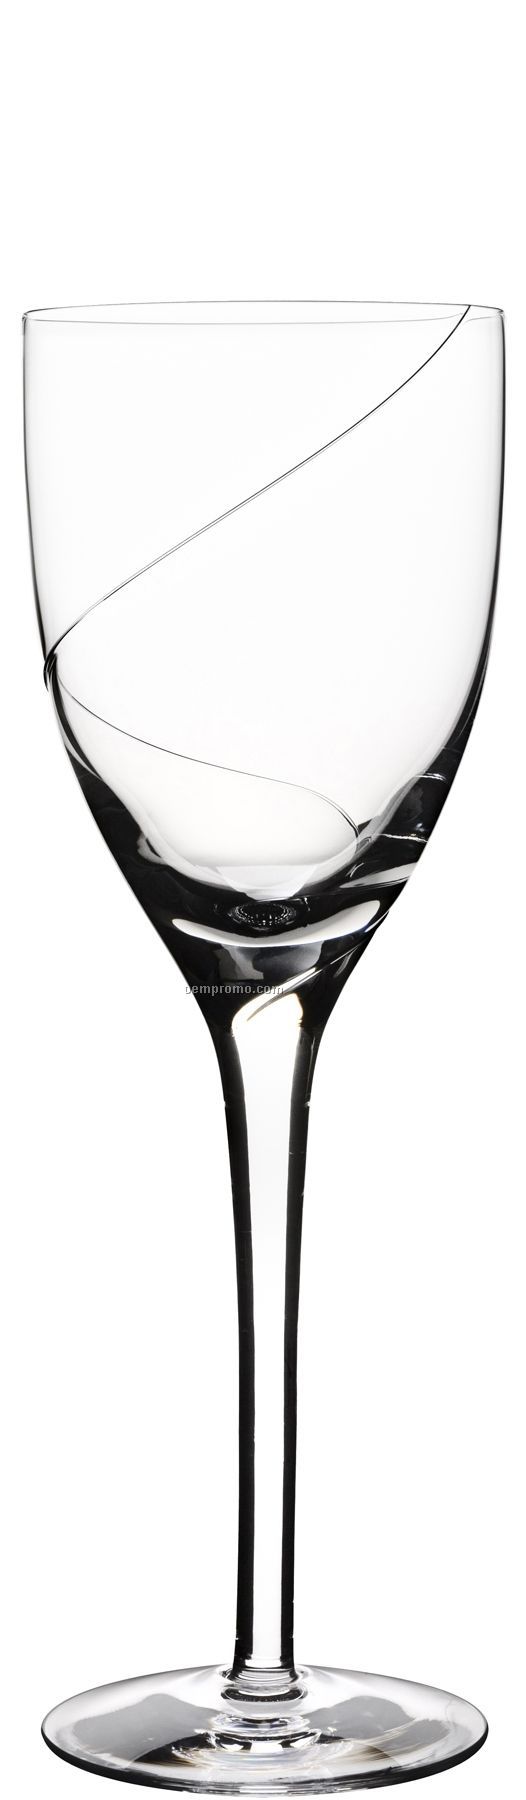 Line Glass Wine Stemware W/ Swirl Design By Anna Ehrner